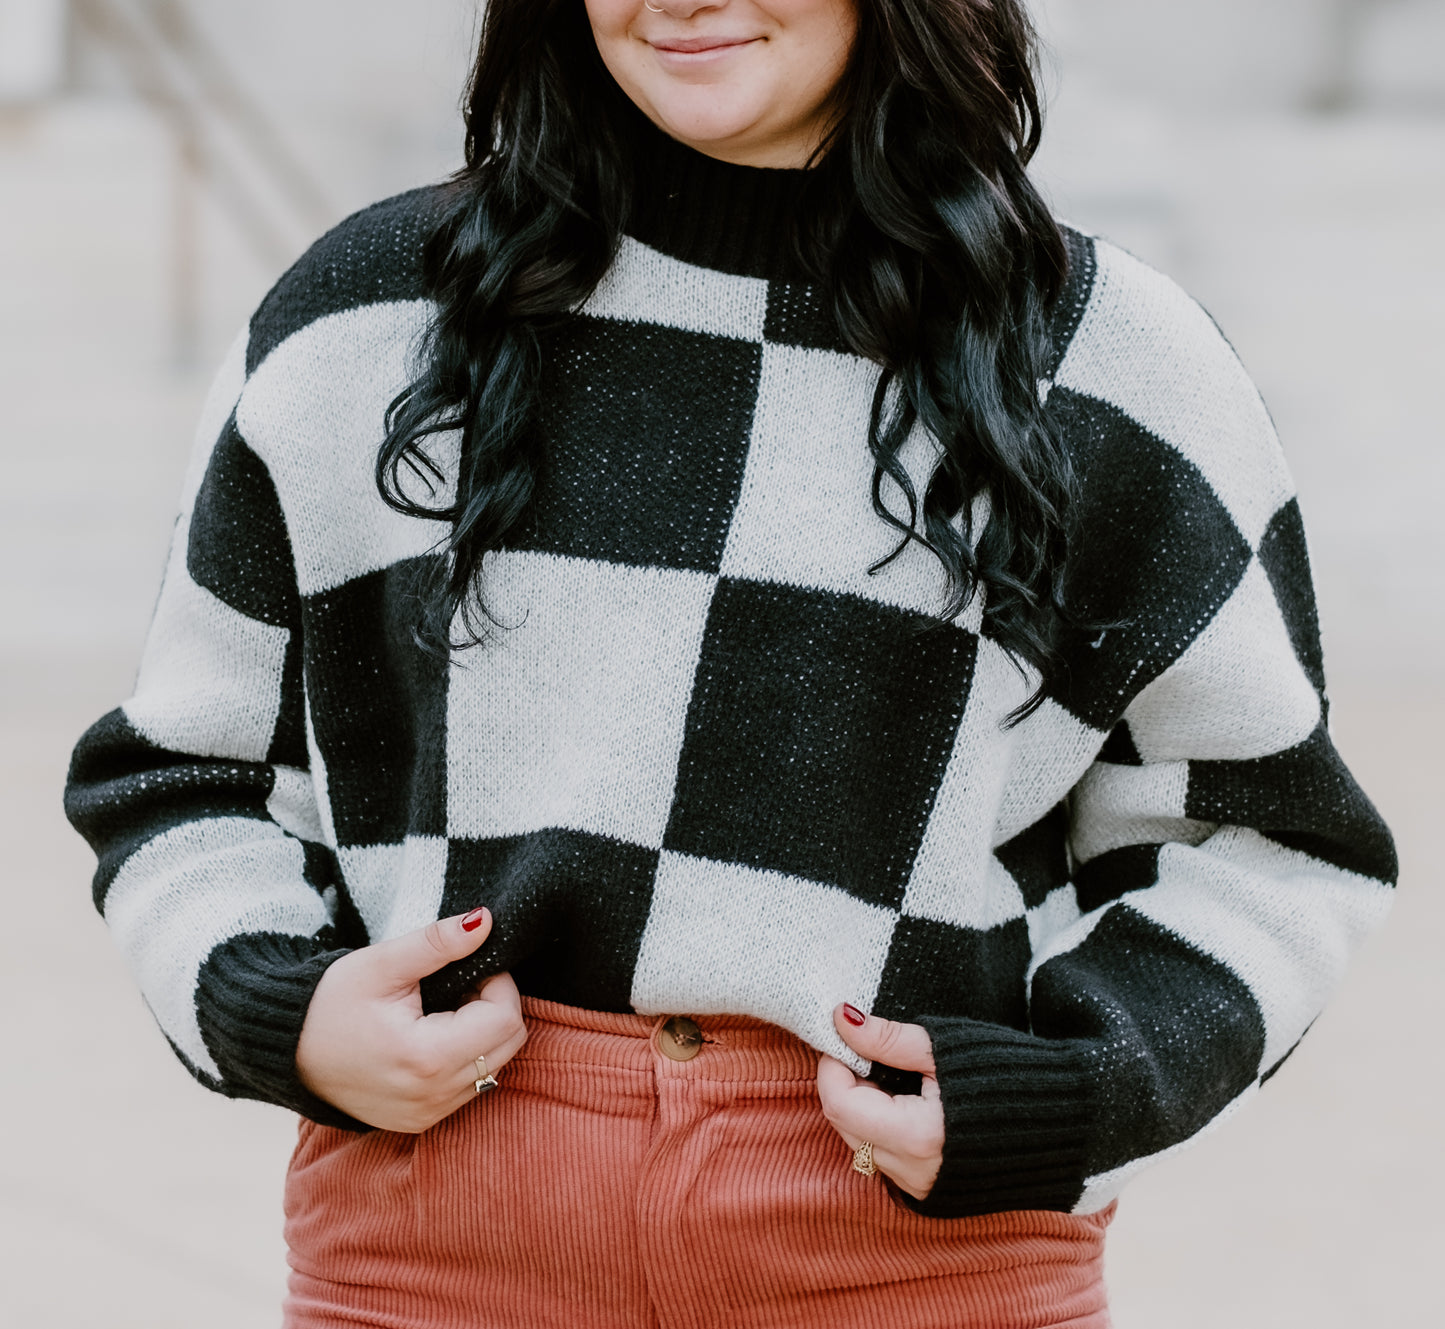 Checker Sweater